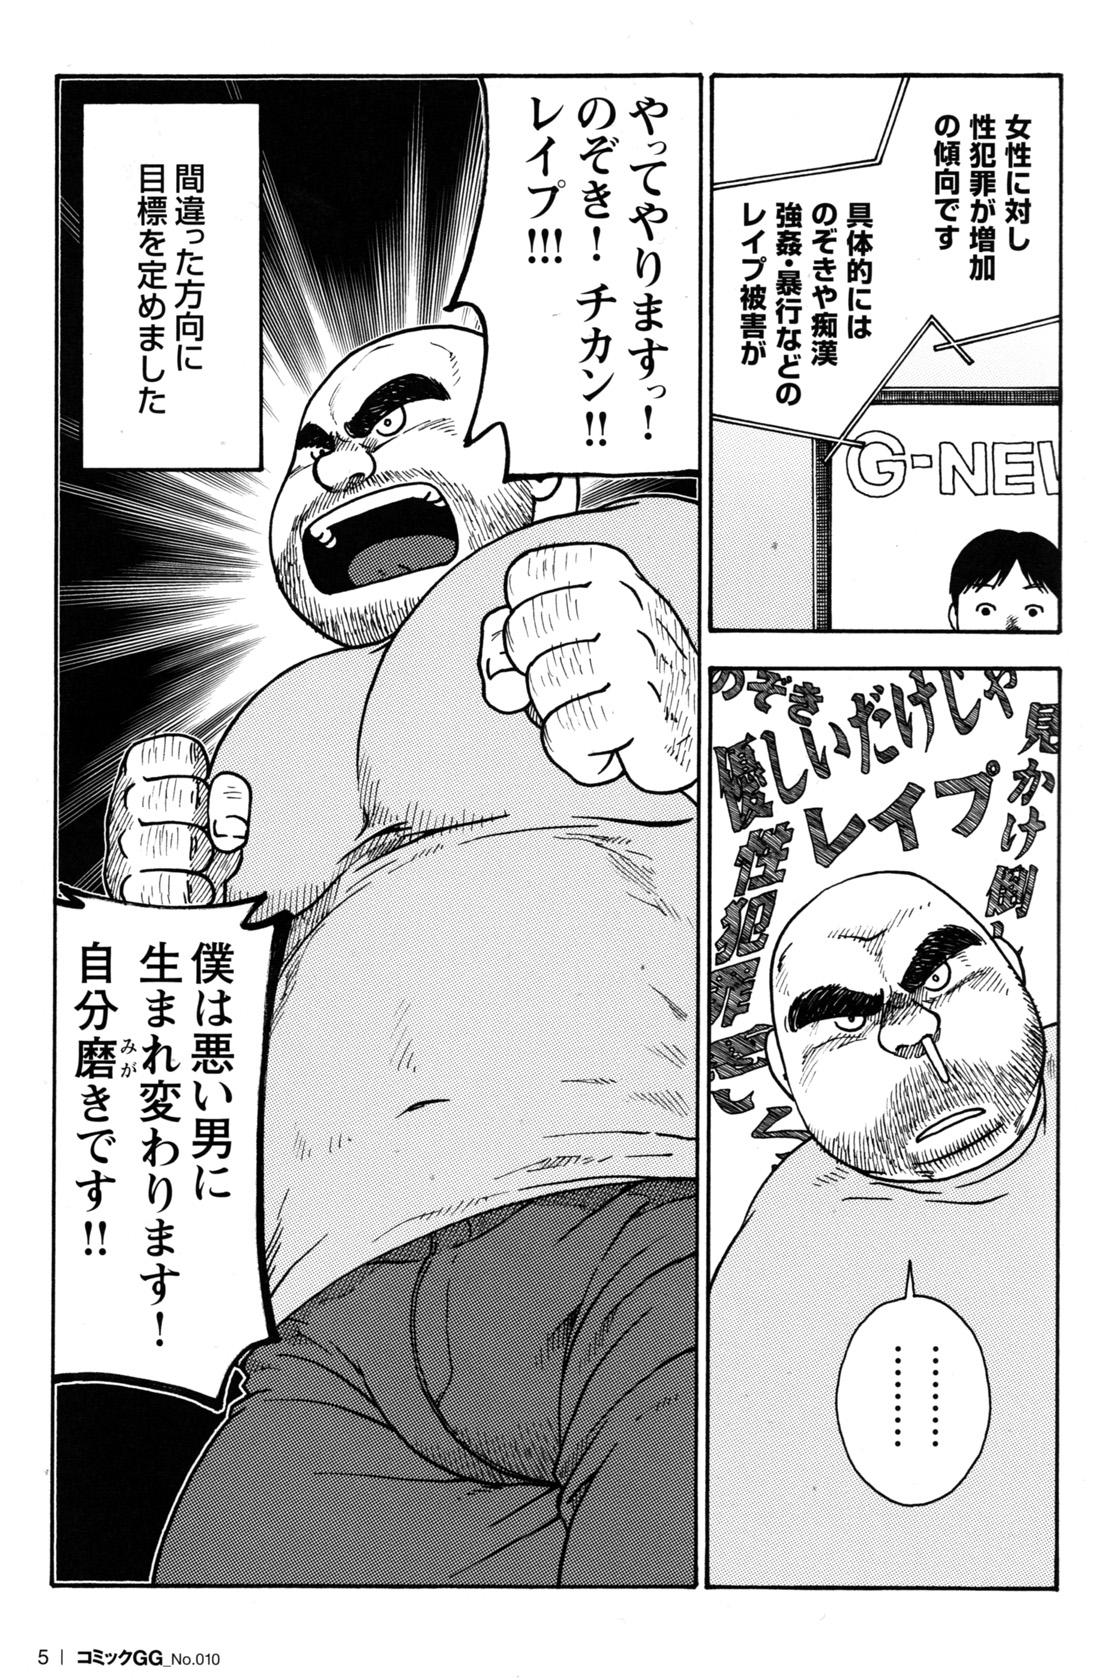 Workout Comic G-men Gaho No.10 Nozoki・Rape・Chikan Stepdad - Page 7